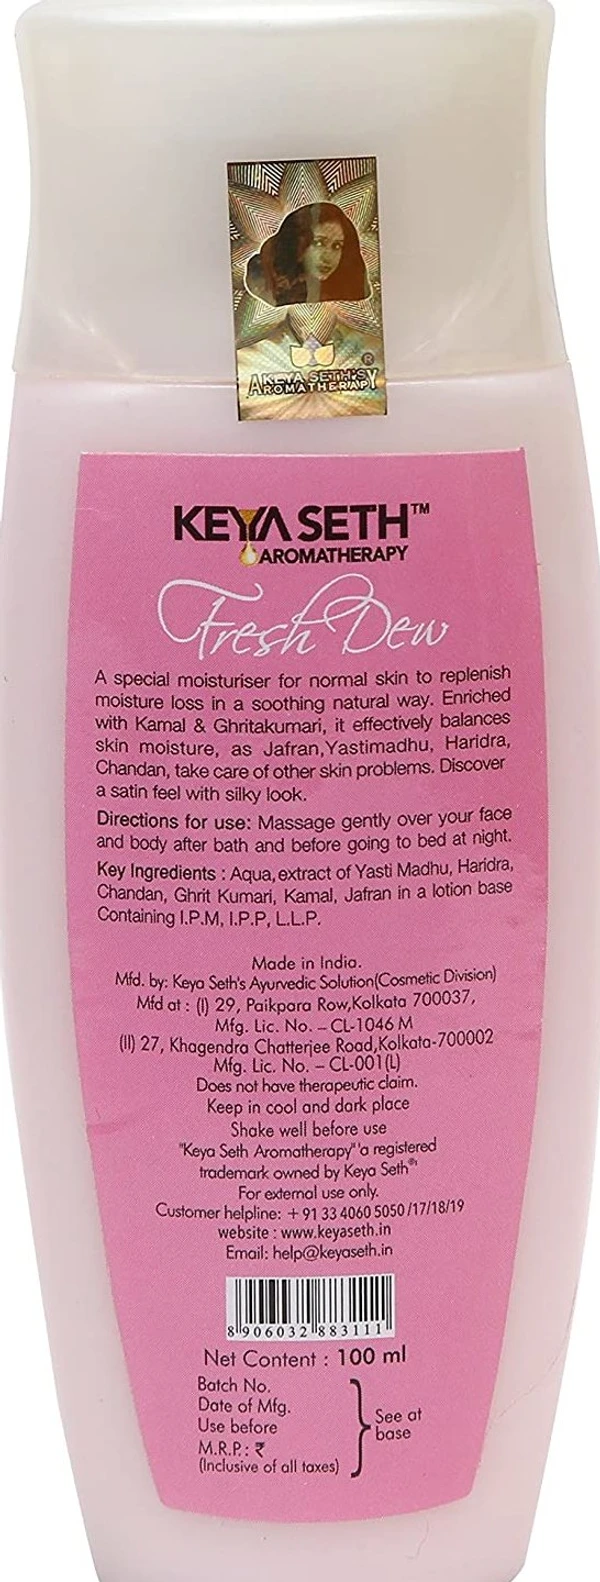 KEYA SETH AROMATHERAPY, DEVICE OF DROP Fresh Dew Moisturizer for Normal Skin by Keya Seth Aromatherapy